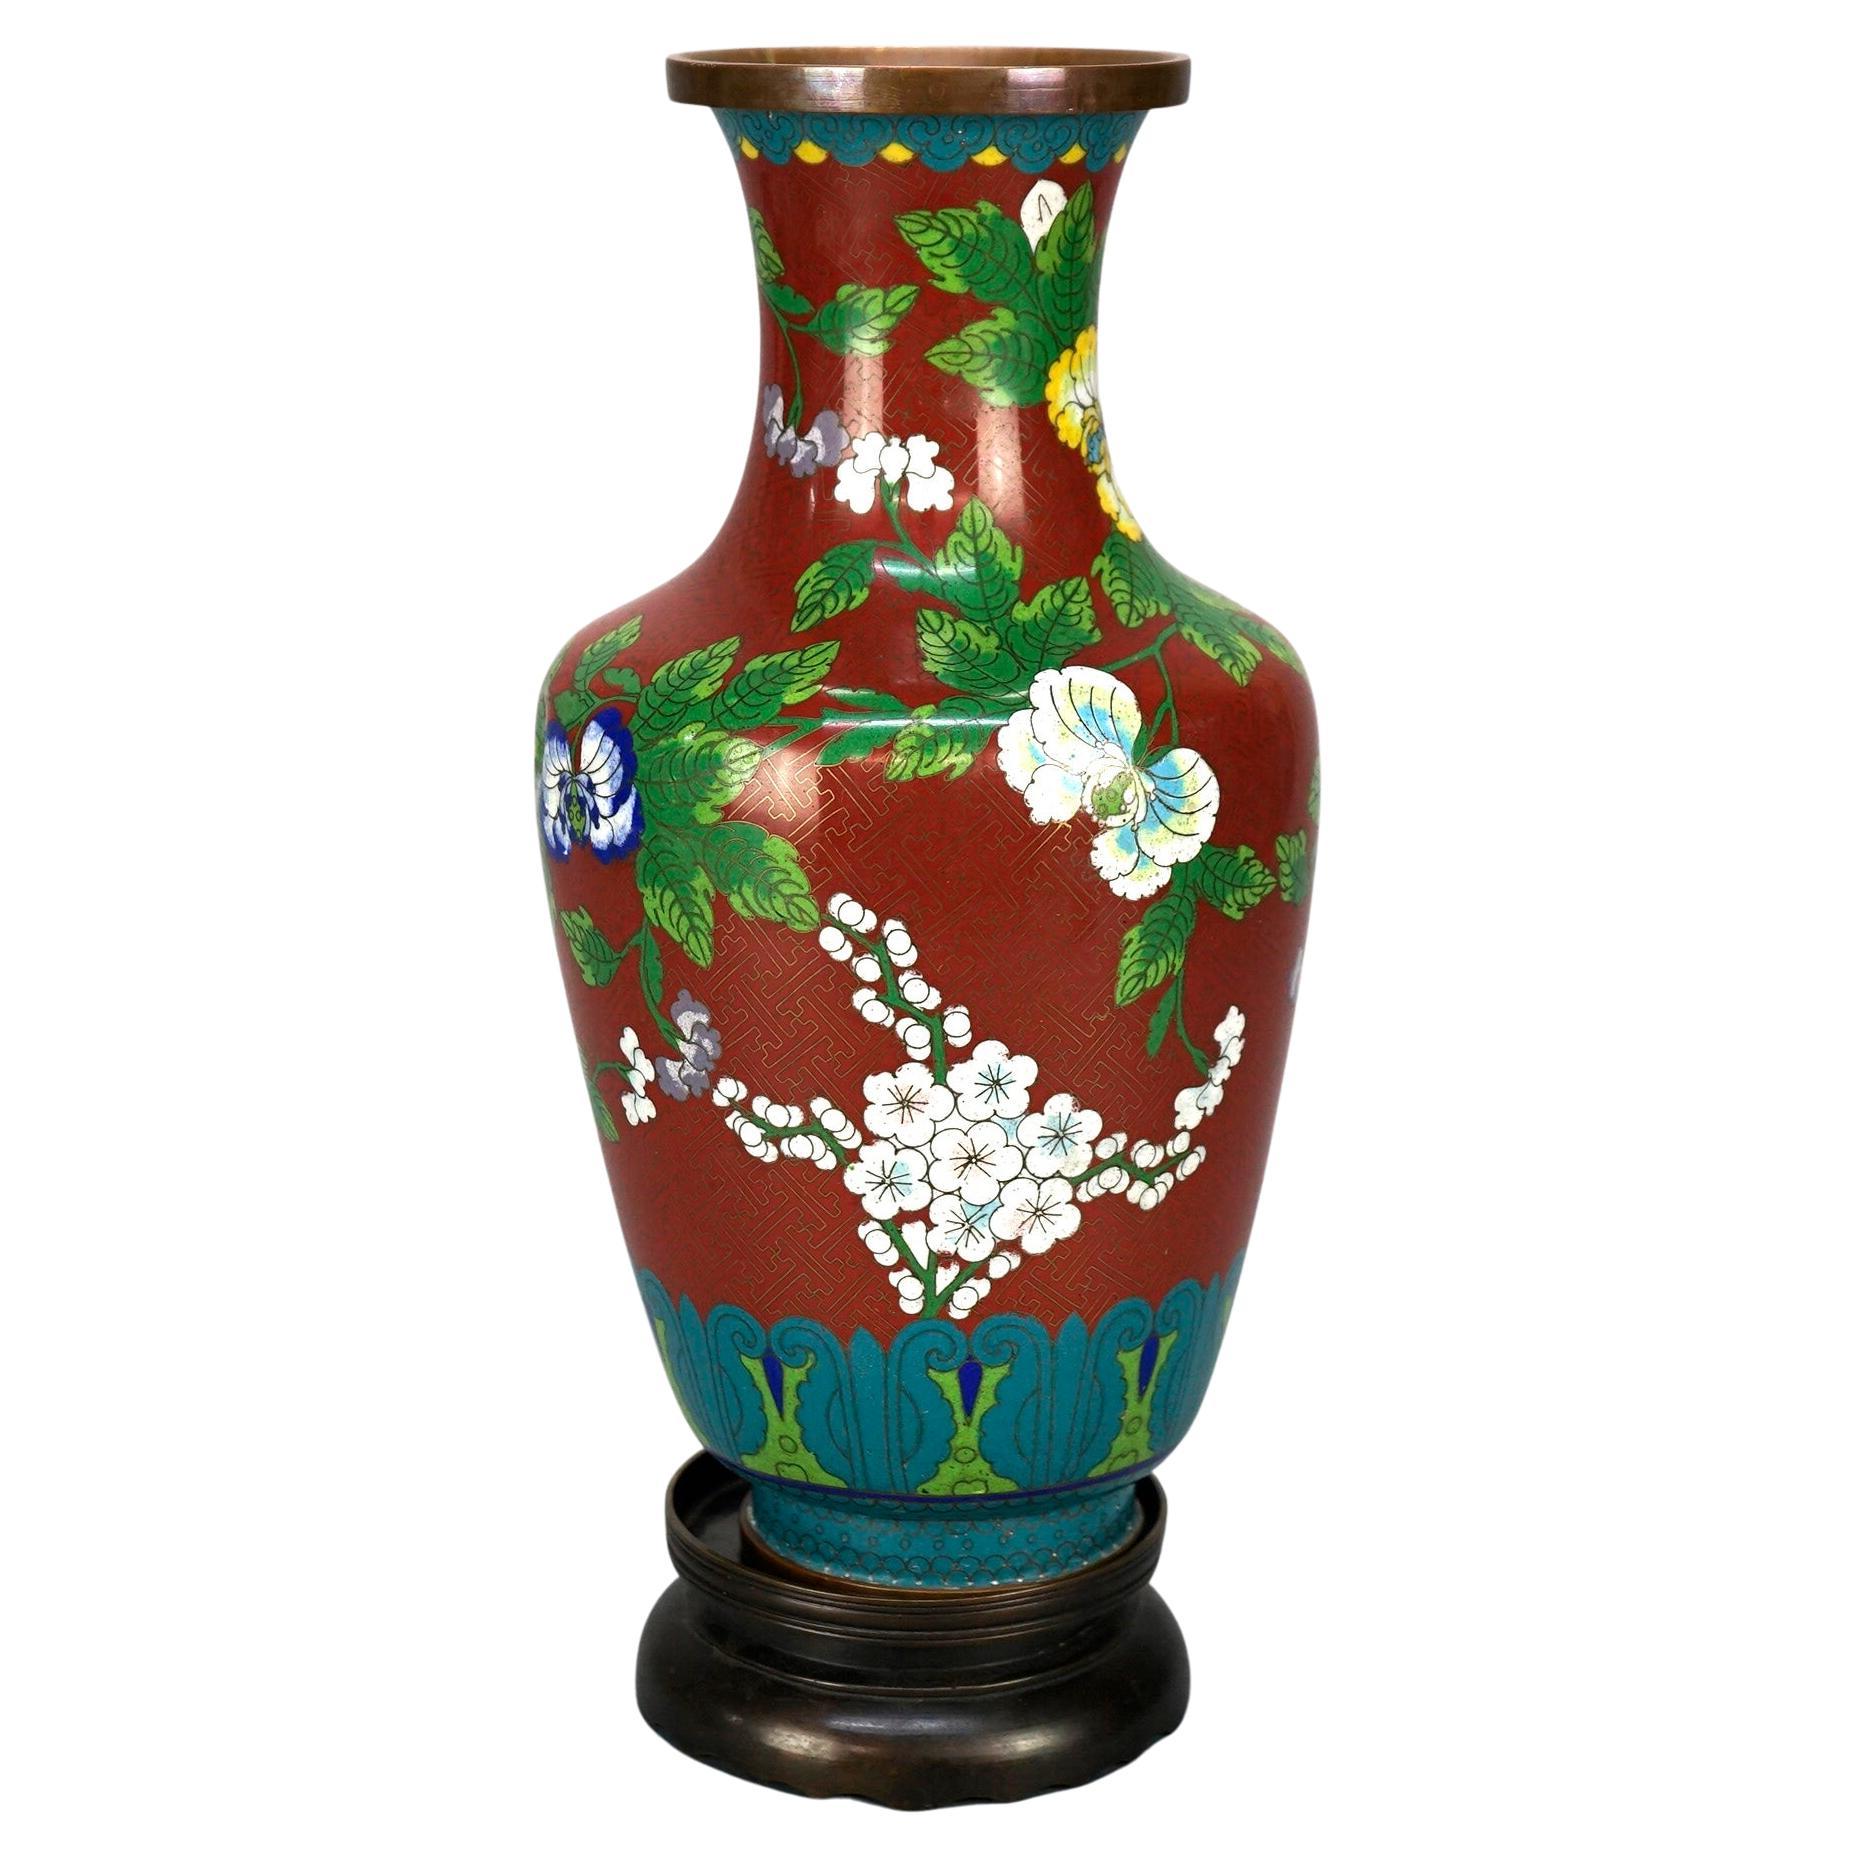 Antike chinesische Cloissone-Vase, emailliert, mit Bronzesockel, Gartenmotiv, um 1900